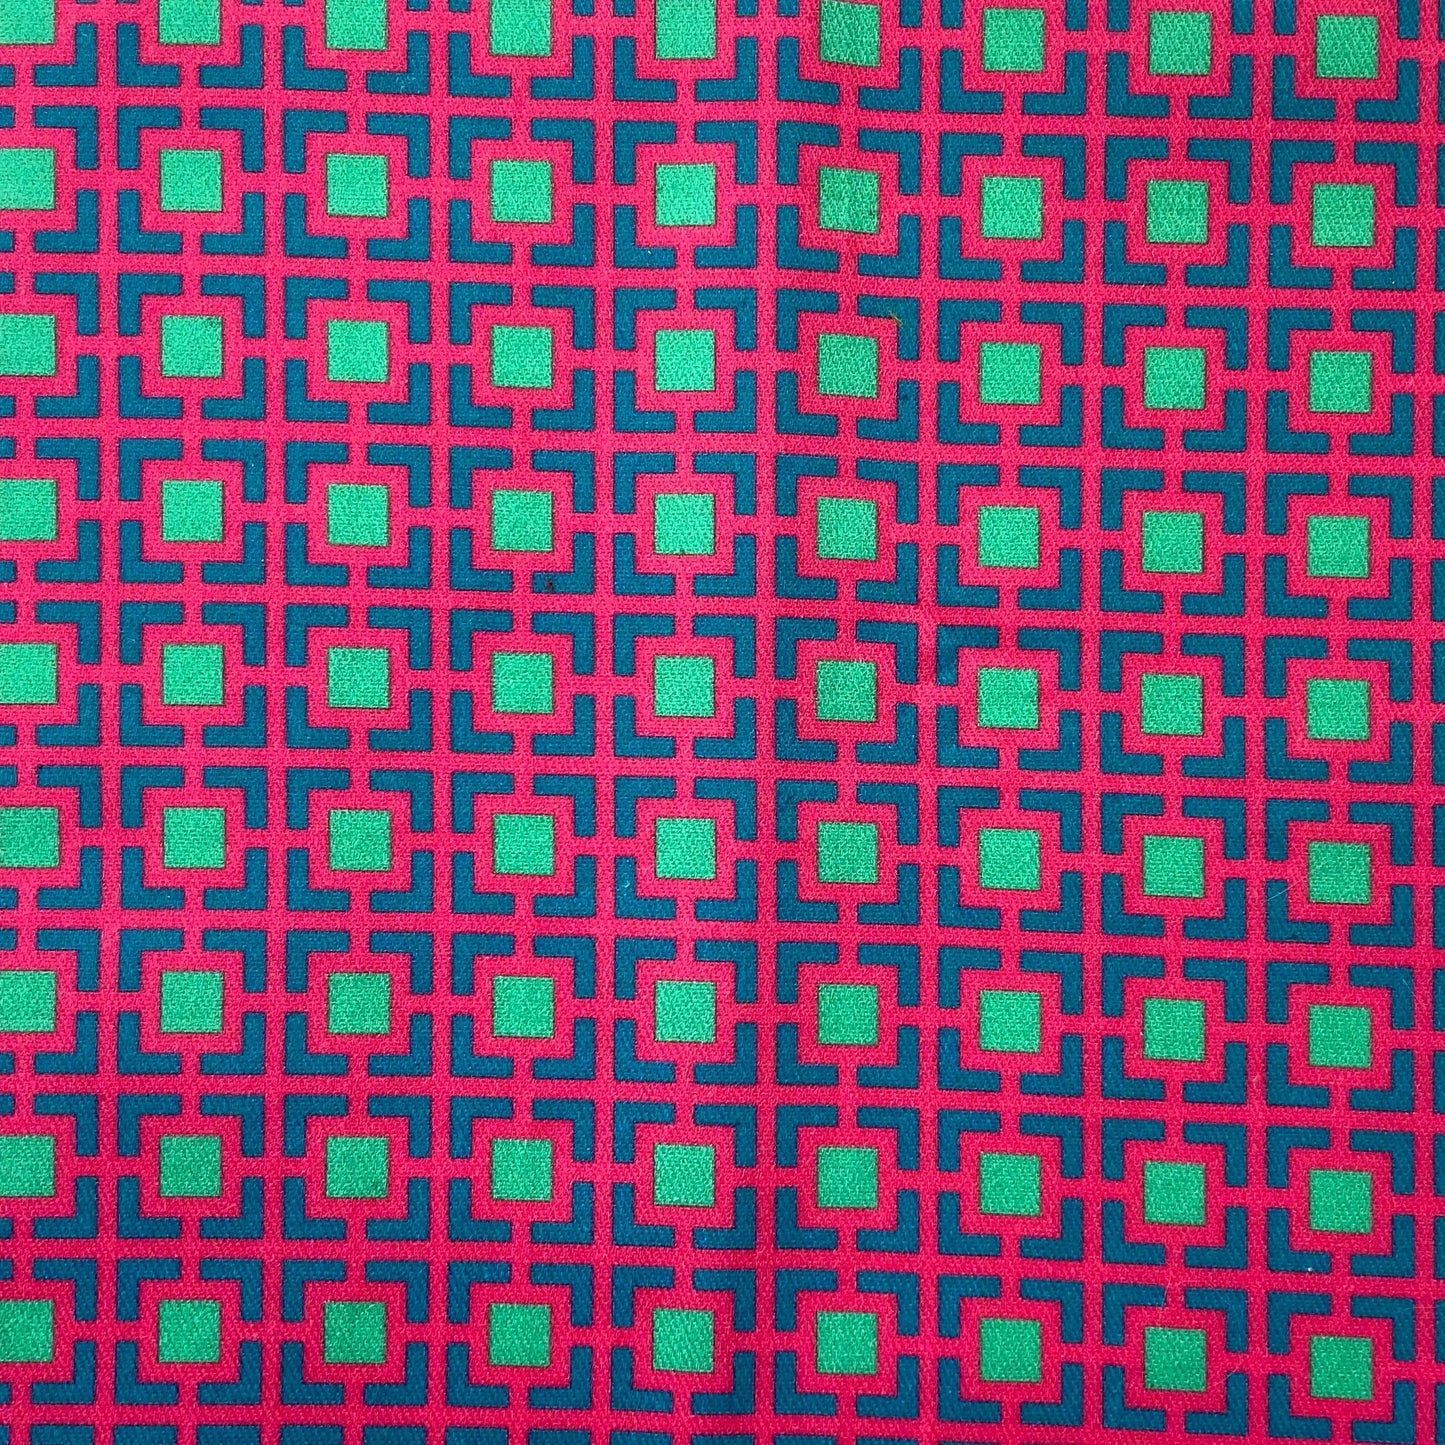 Sergé de coton imprimé motif carrés très colros fuschia bleu canadr paon turquoise vert d'eau contratse géométrique Cour Carrée dessin de jardins symétriques pop flashy rose  